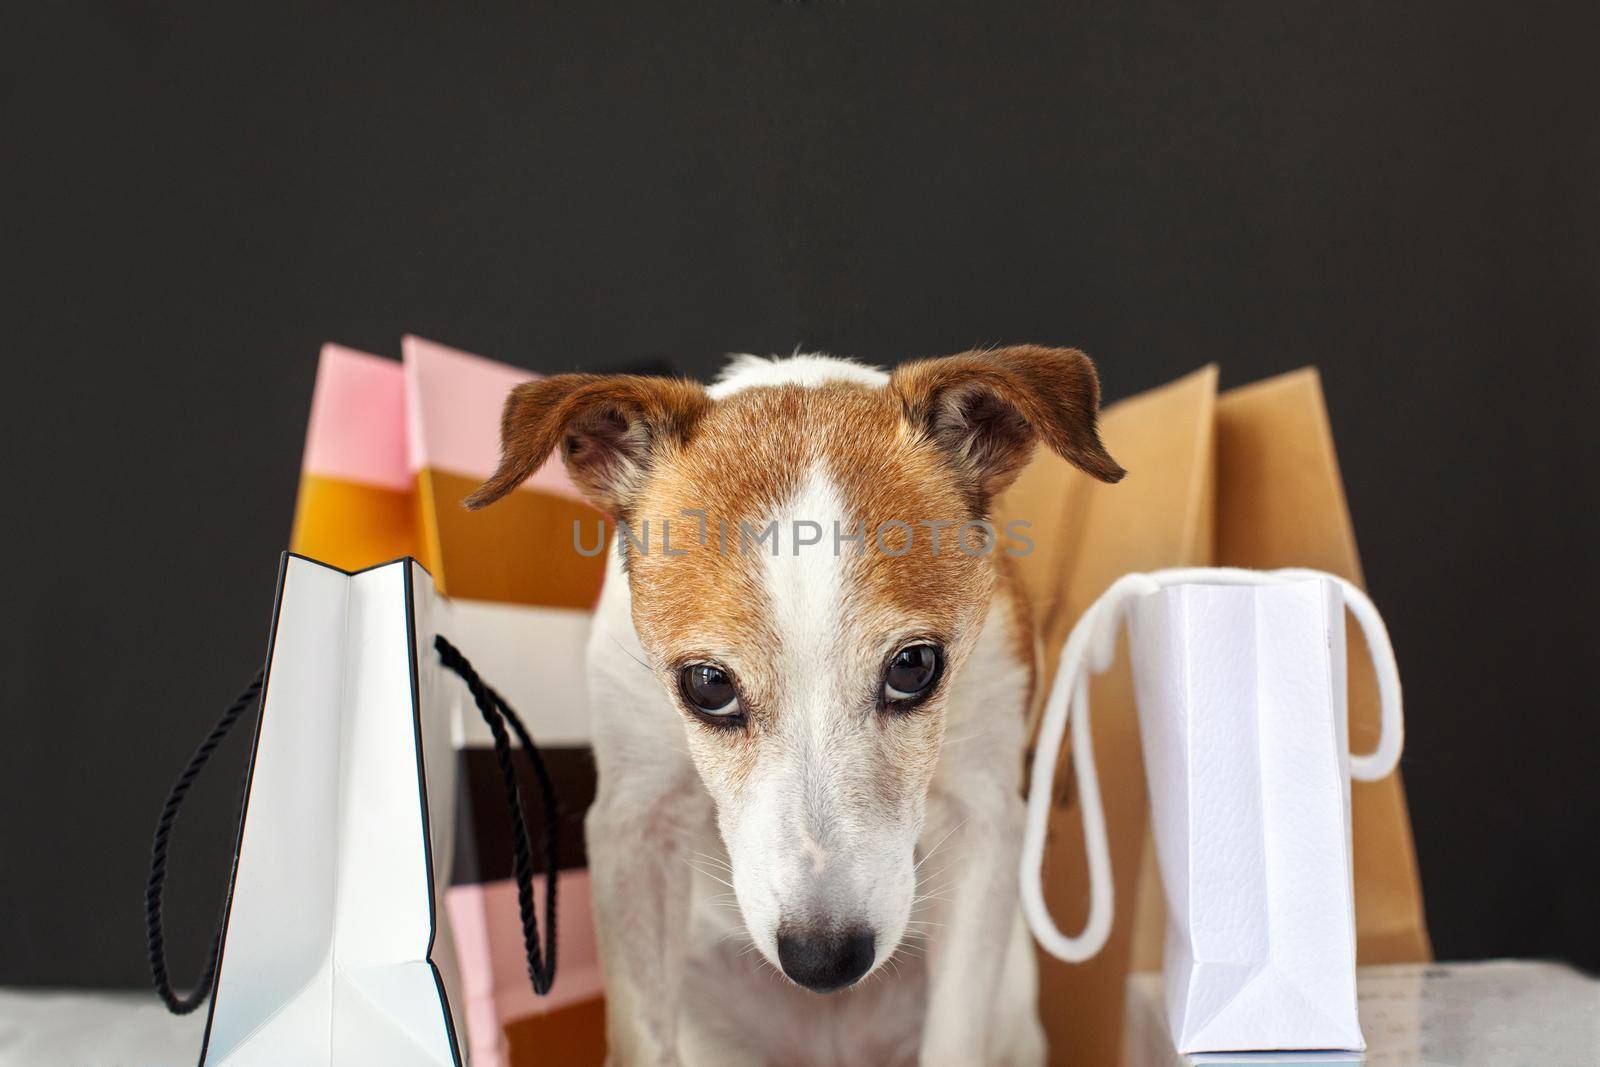 Cute dog near shopping bags by Demkat